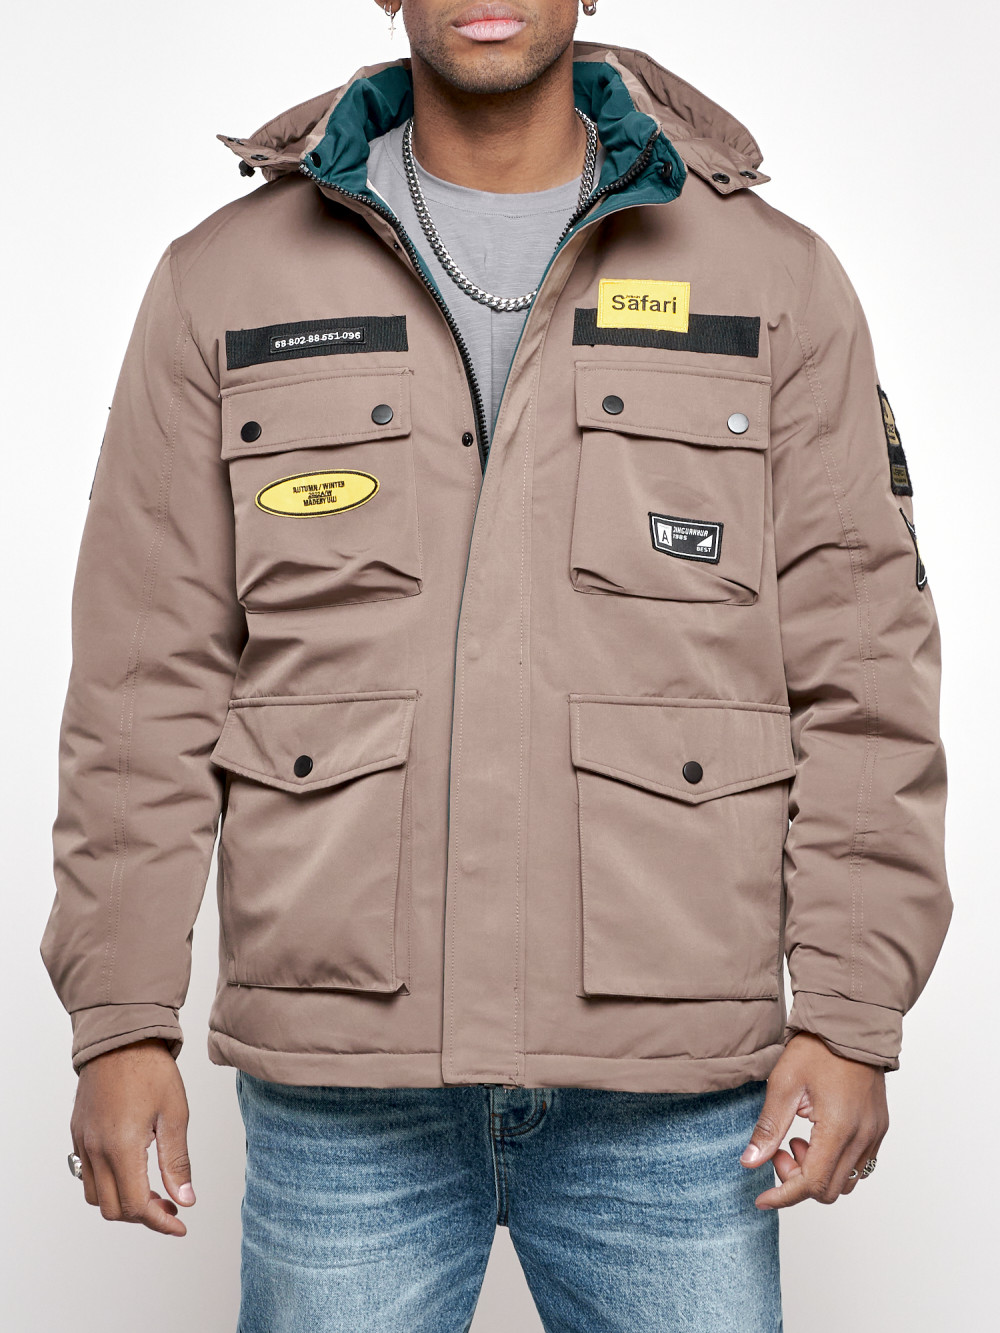 Зимняя куртка мужская AD88905 коричневая XL